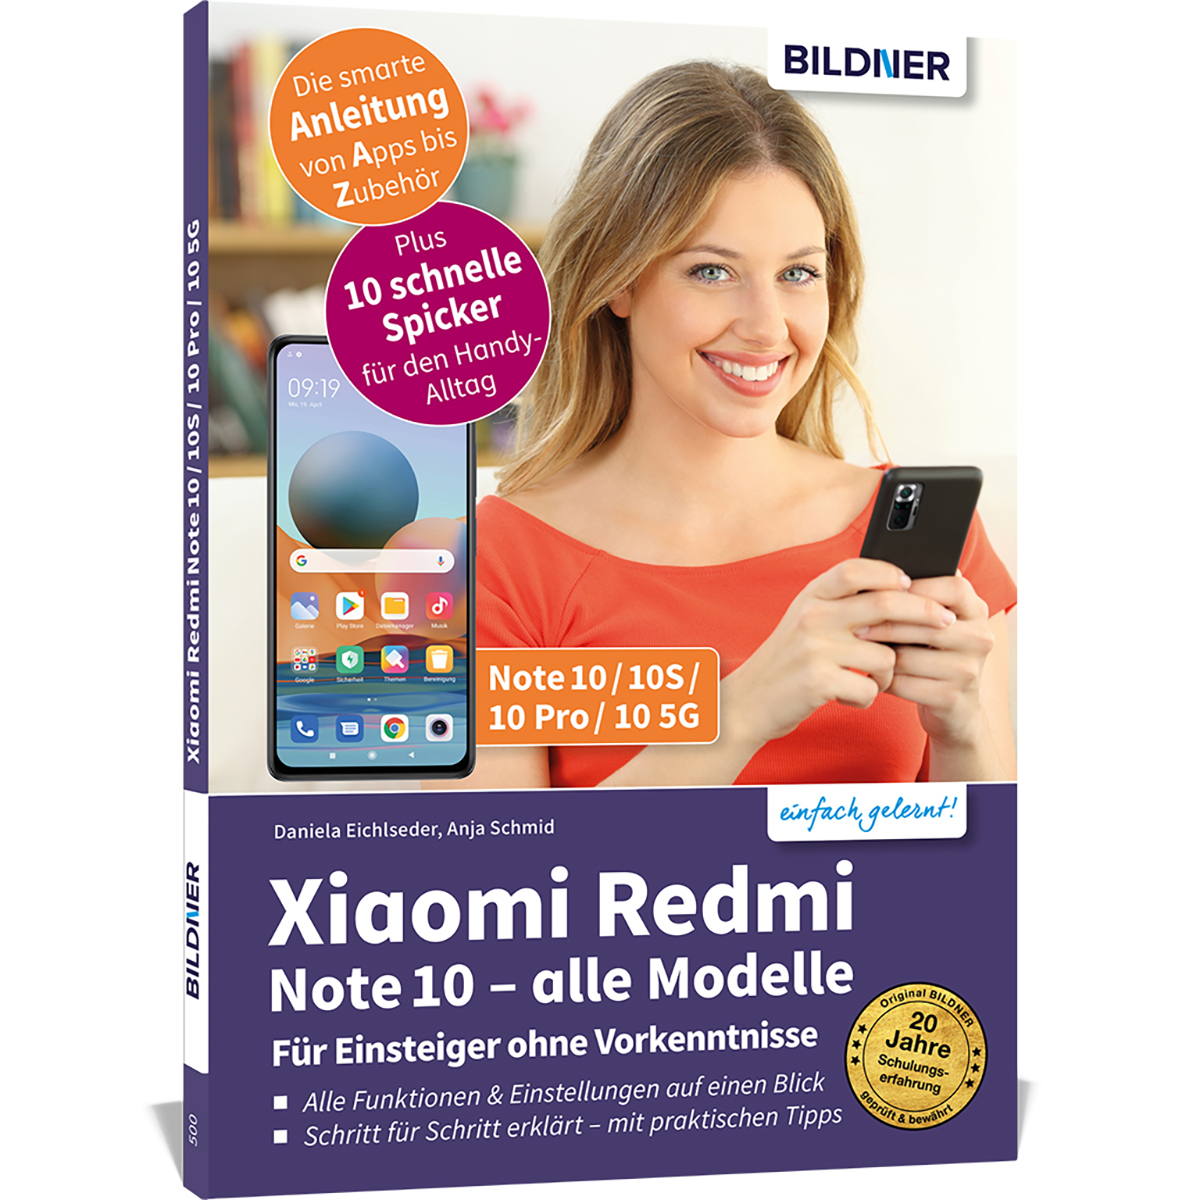 Für Redmi 10 / 10S / 10 Pro / 10 5G Einsteiger Vorkenntnisse - ohne Xiaomi Note